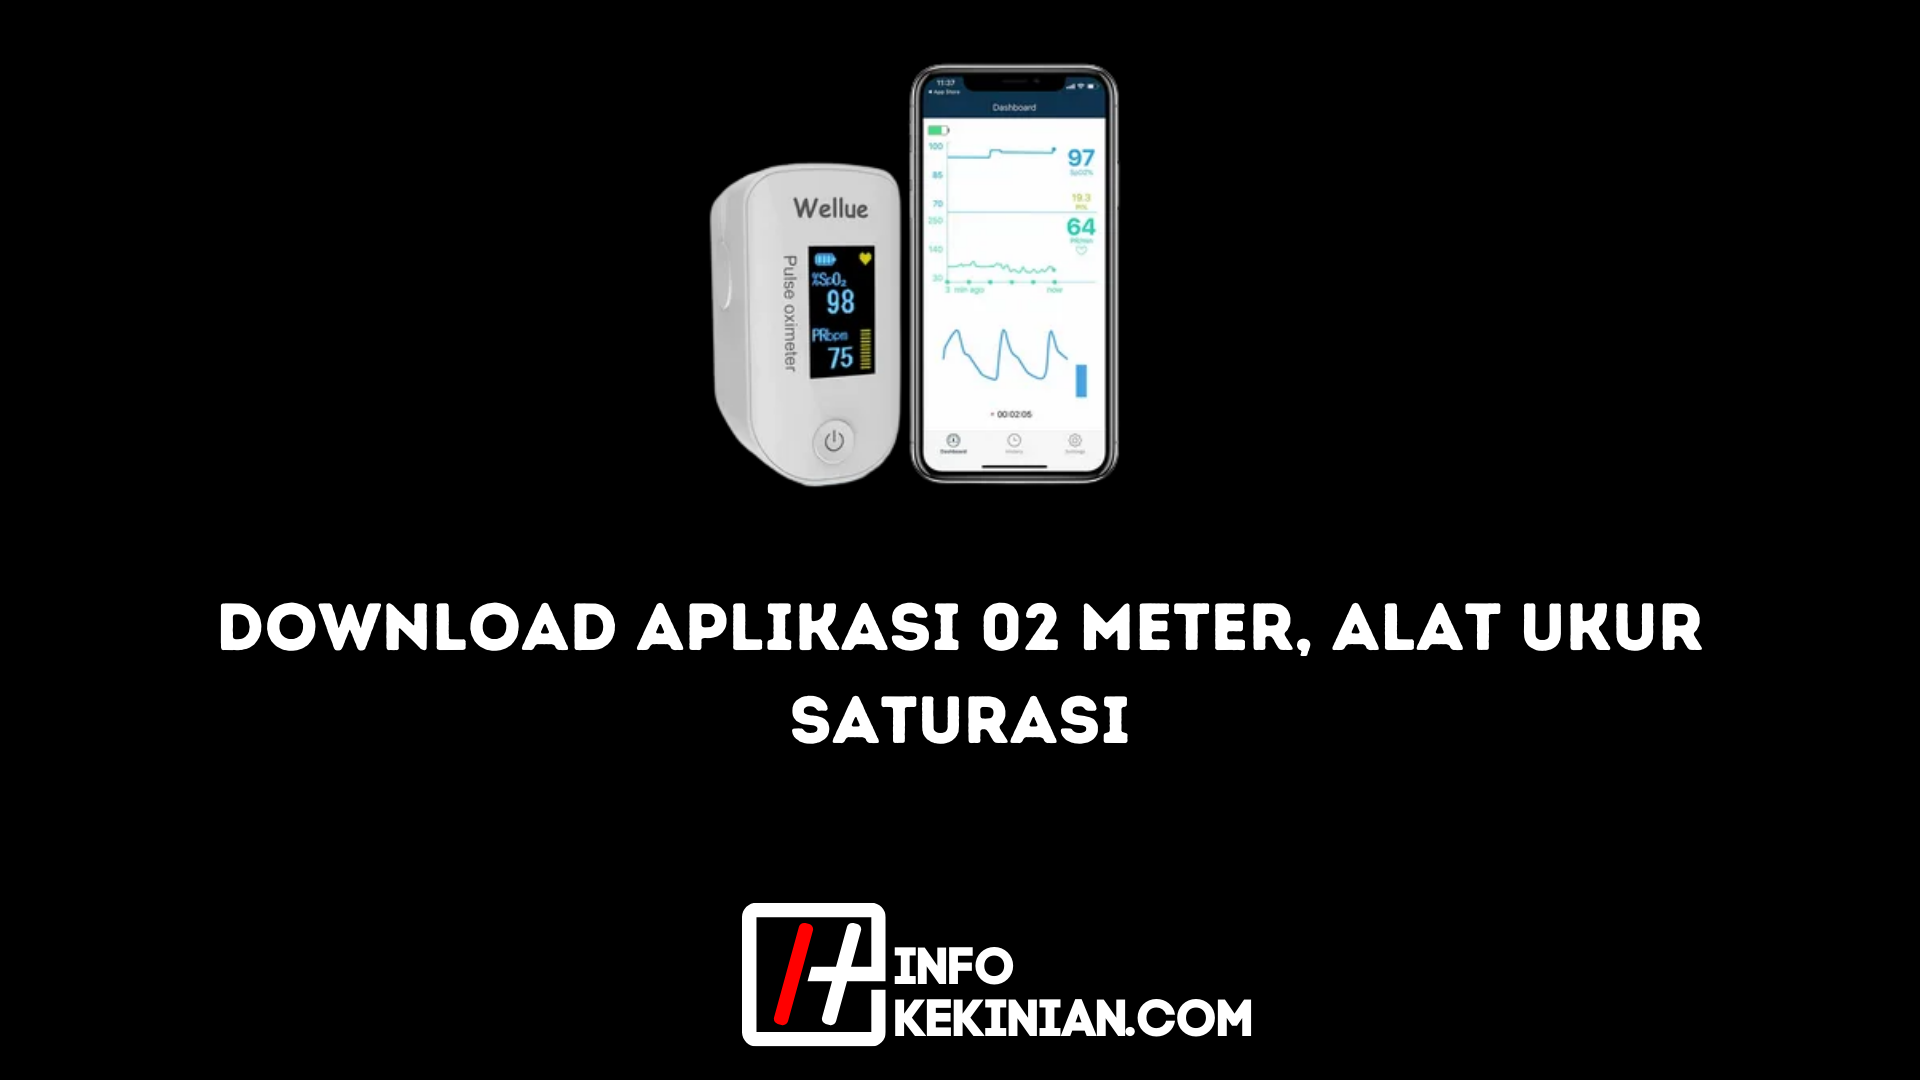 Download Aplikasi 02 Meter Alat Ukur Saturasi